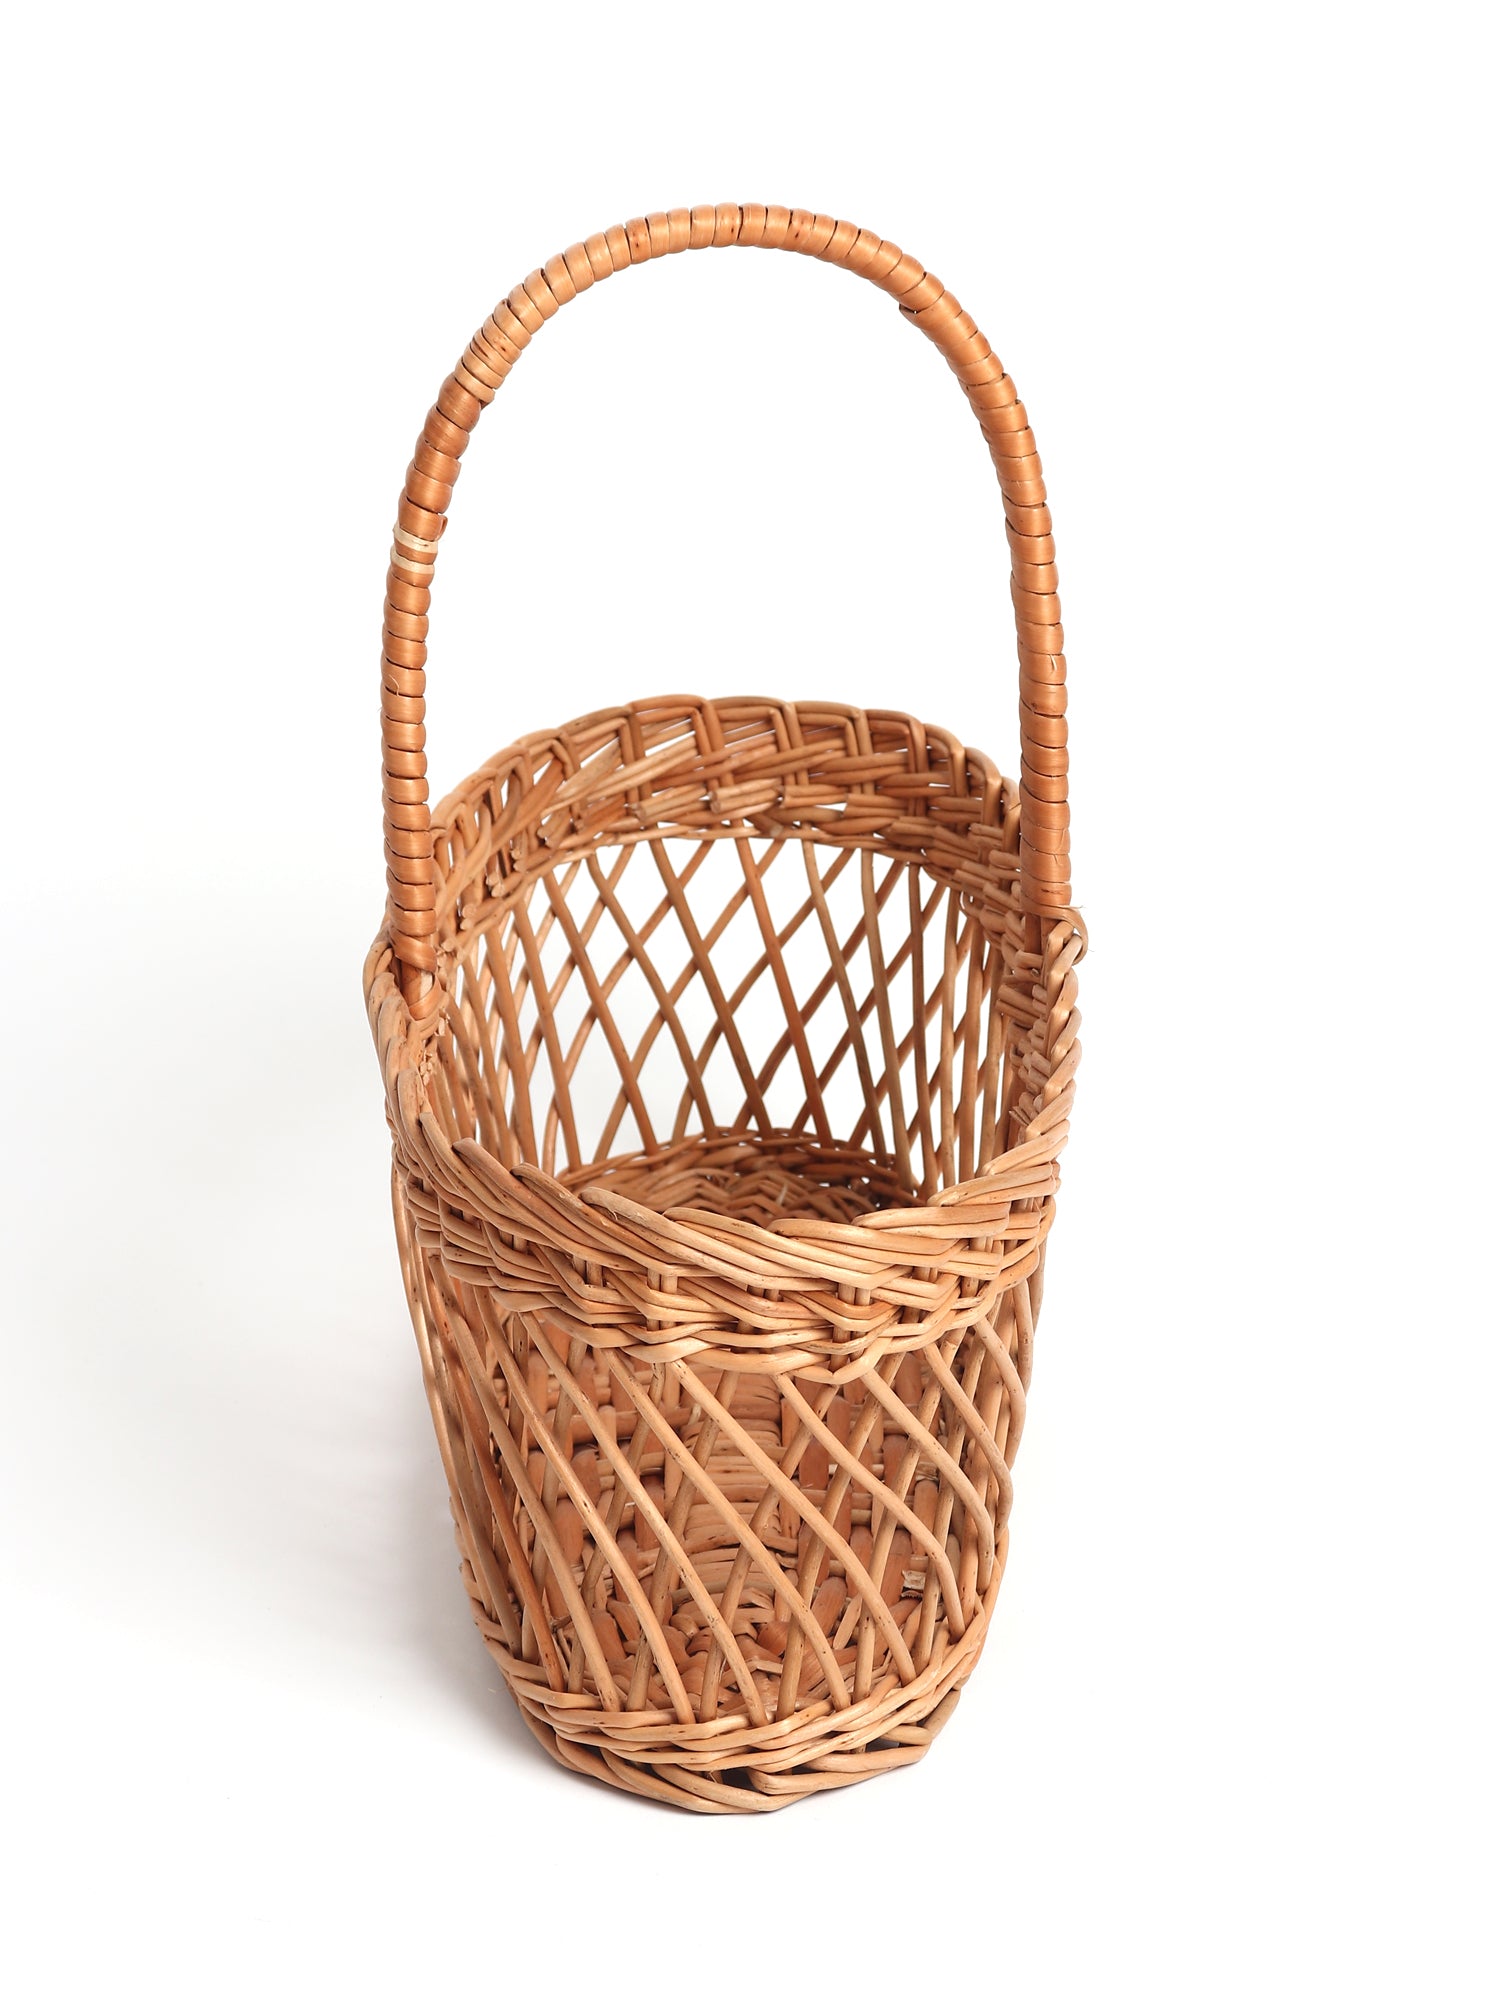  Fruit Baskets online